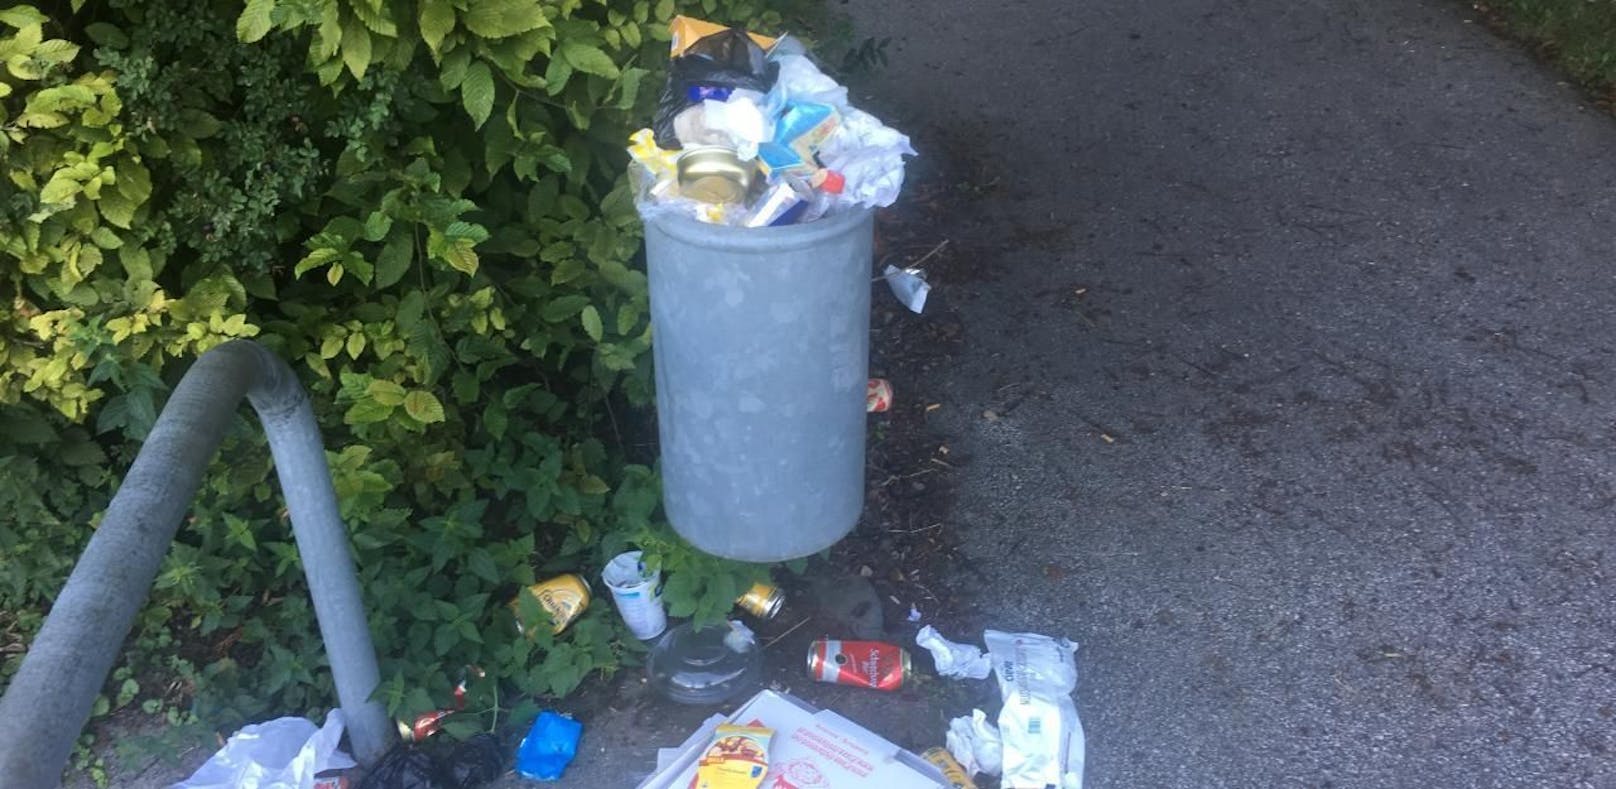 Traisen: Ärger bei Spaziergängern über volle Müllkübel.